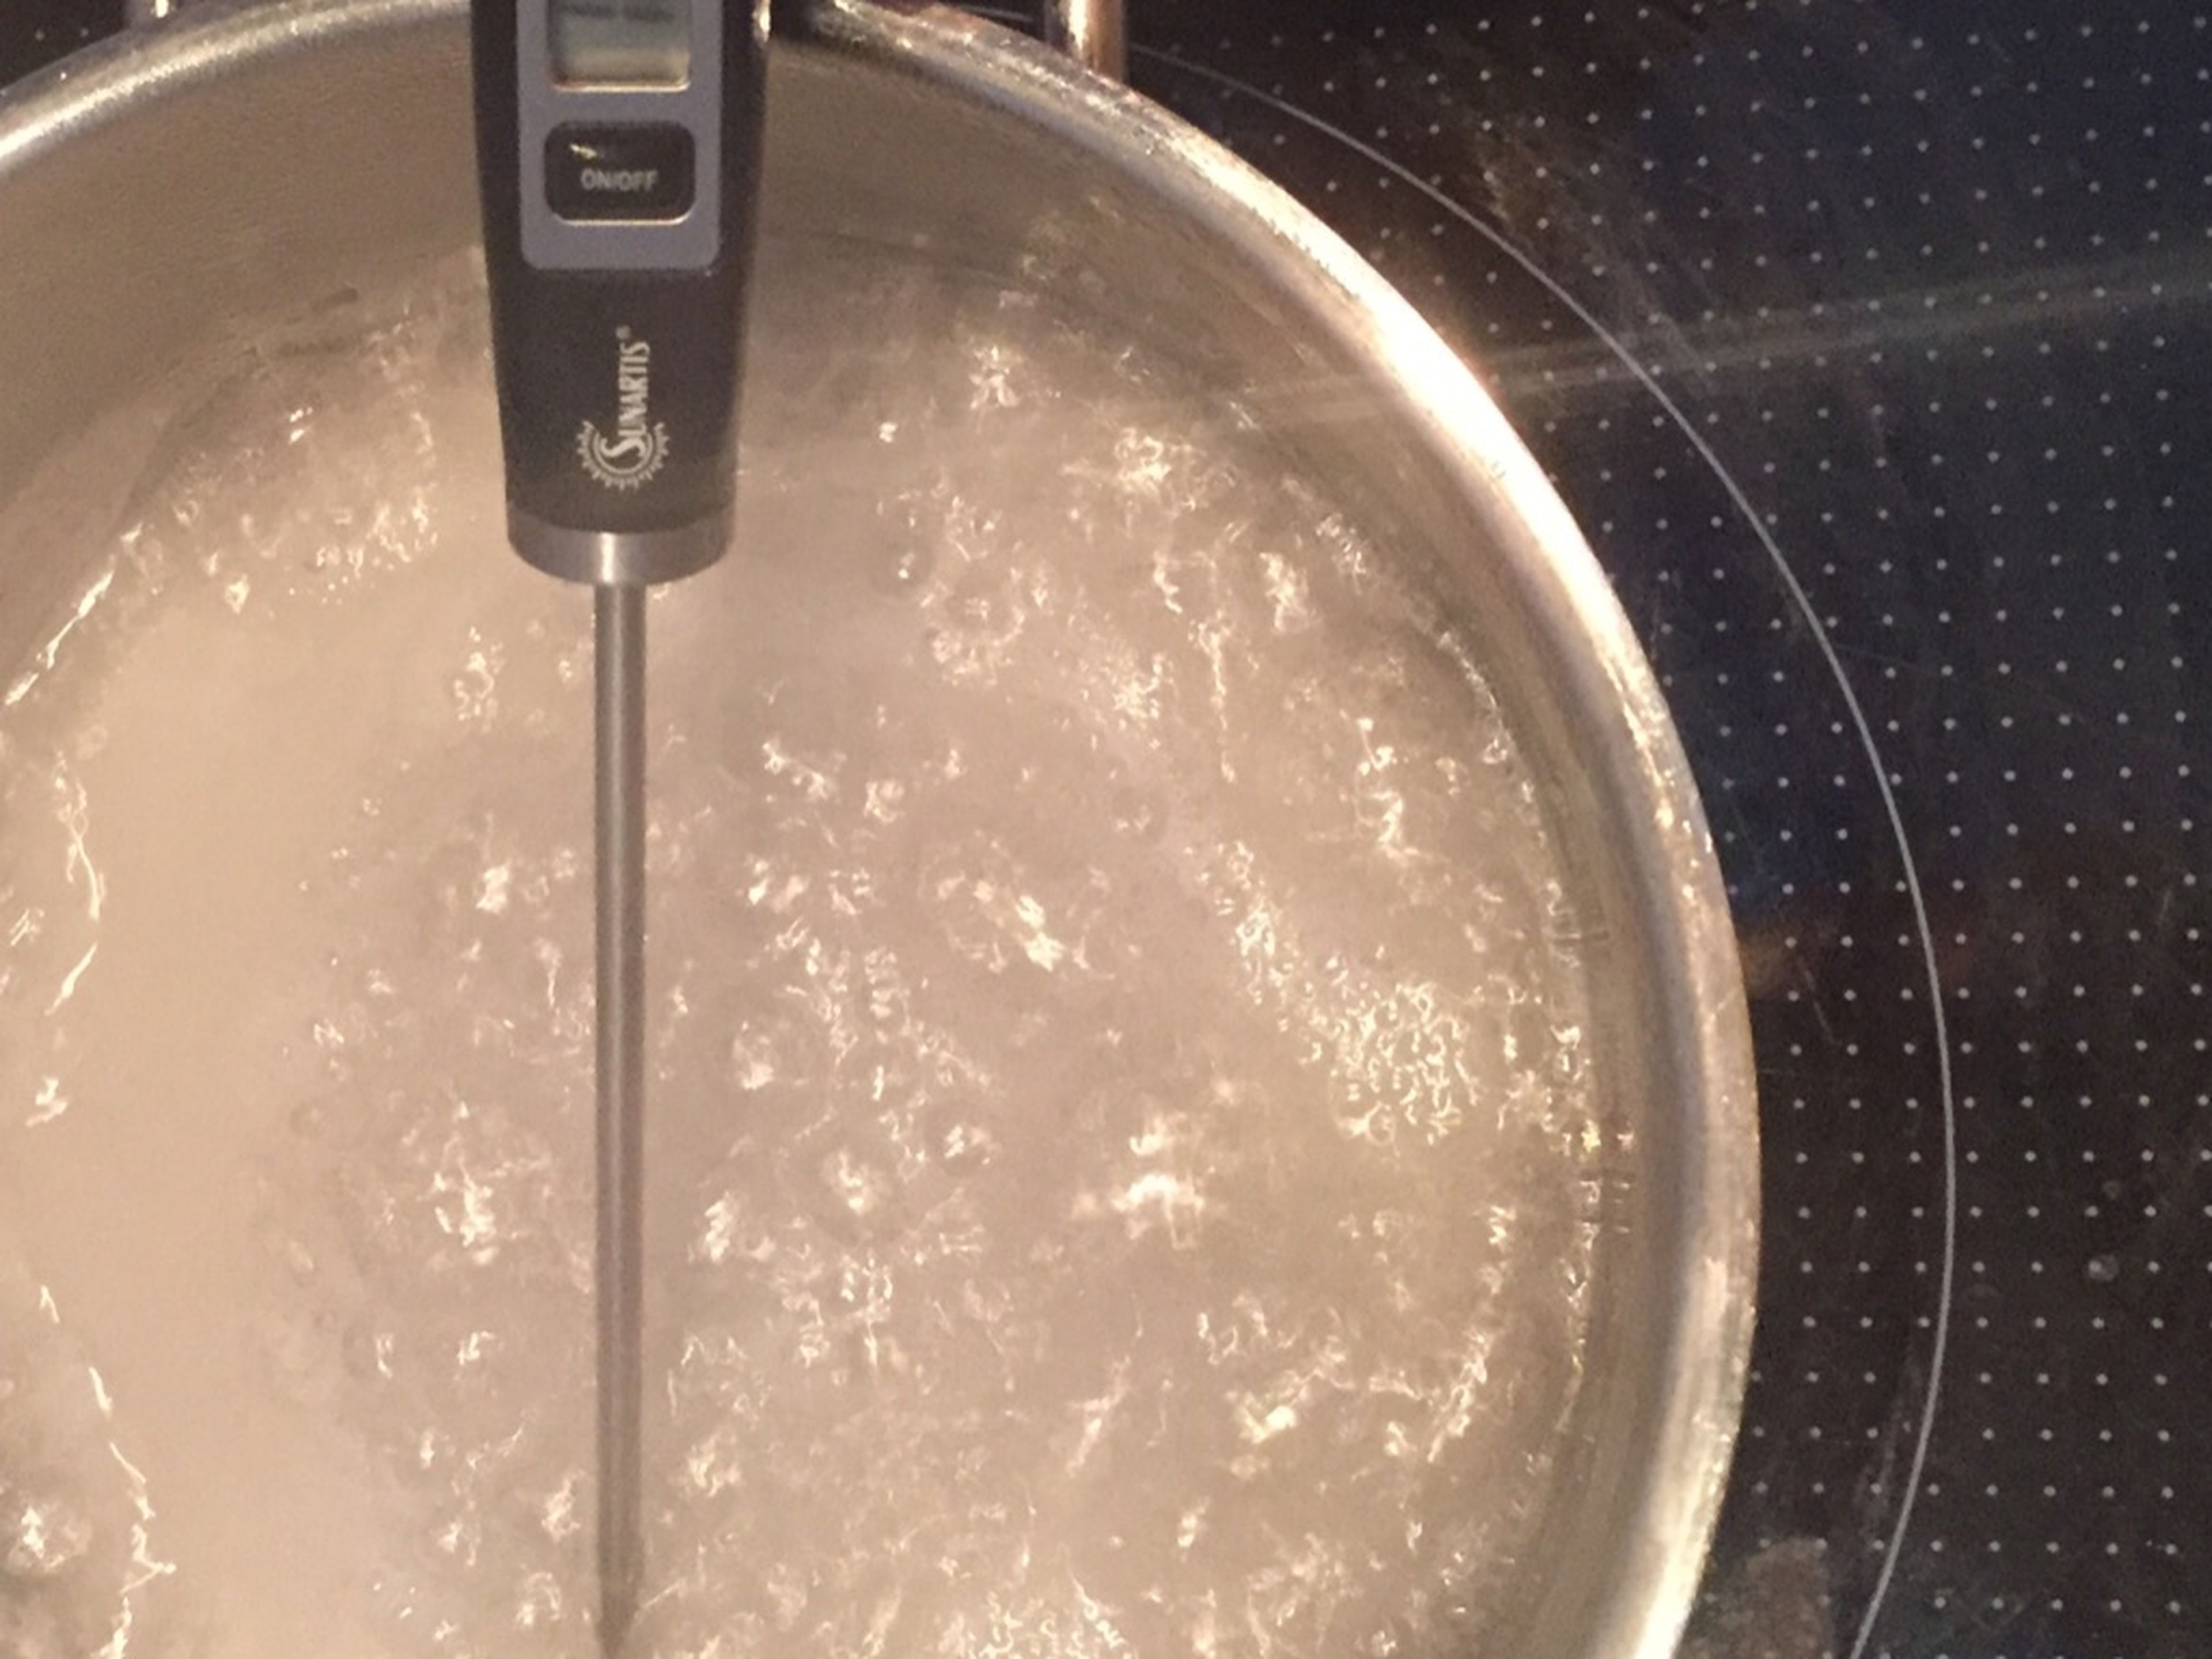 Teil des Eiweißes zu Eischnee schlagen. Teil des Wassers und den Zucker in einem Topf (ohne rühren) zum Kochen bringen. Die Temperatur des Zuckersirups sollte 115°C nicht übersteigen. Sobald die Temperatur auf 105°C gestiegen ist, stärker rühren.